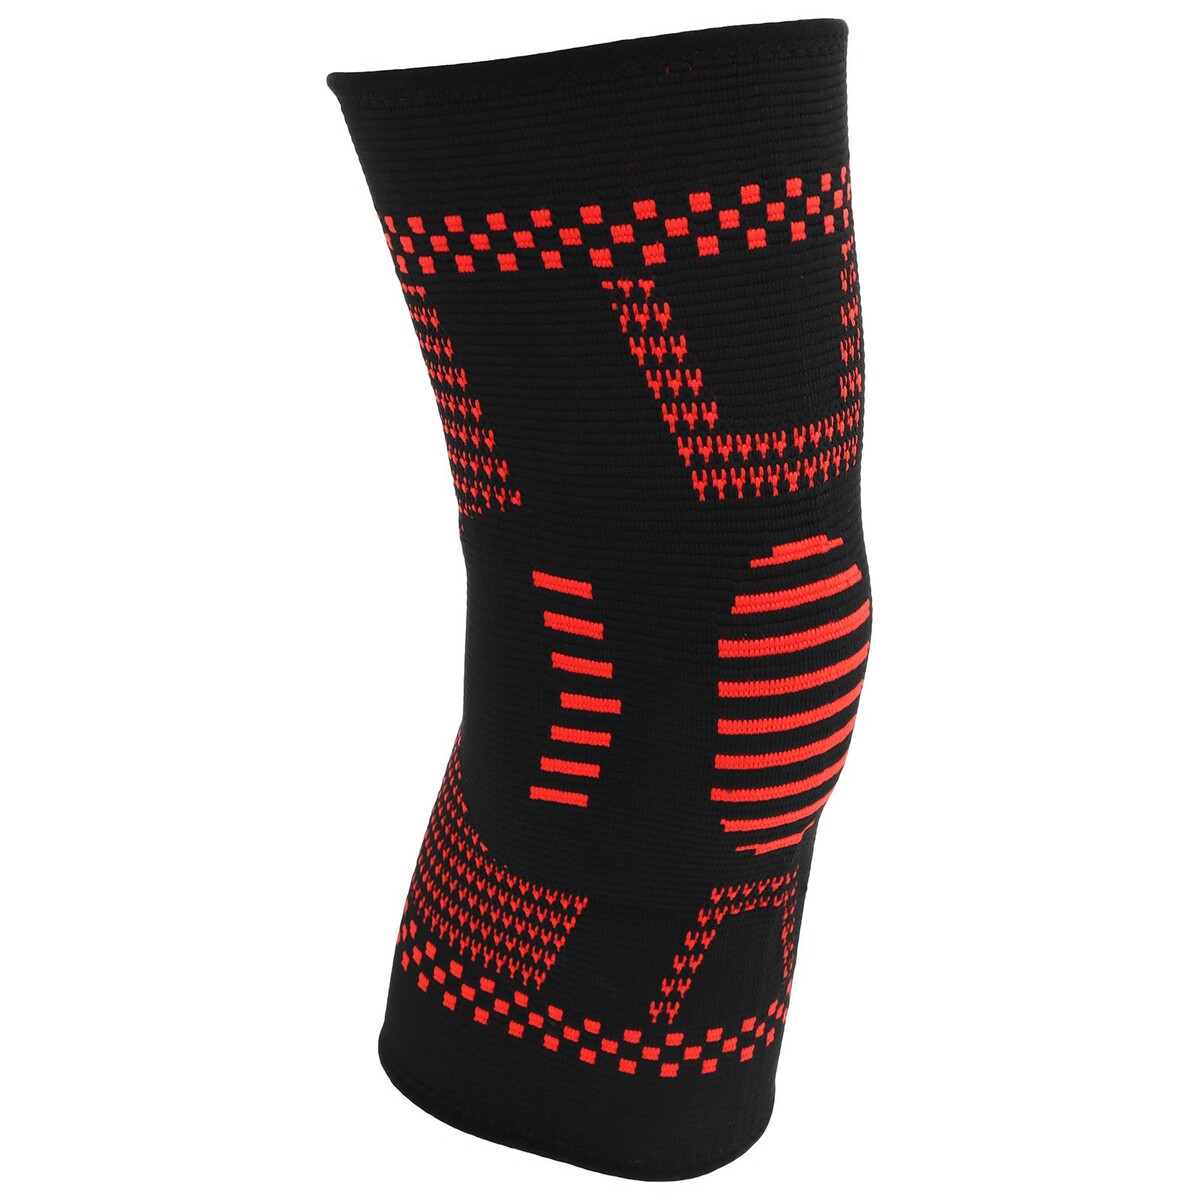 Суппорт колена,размер универсальный (1 шт), цвет чёрный/красный No brand 0980021 - фото 3